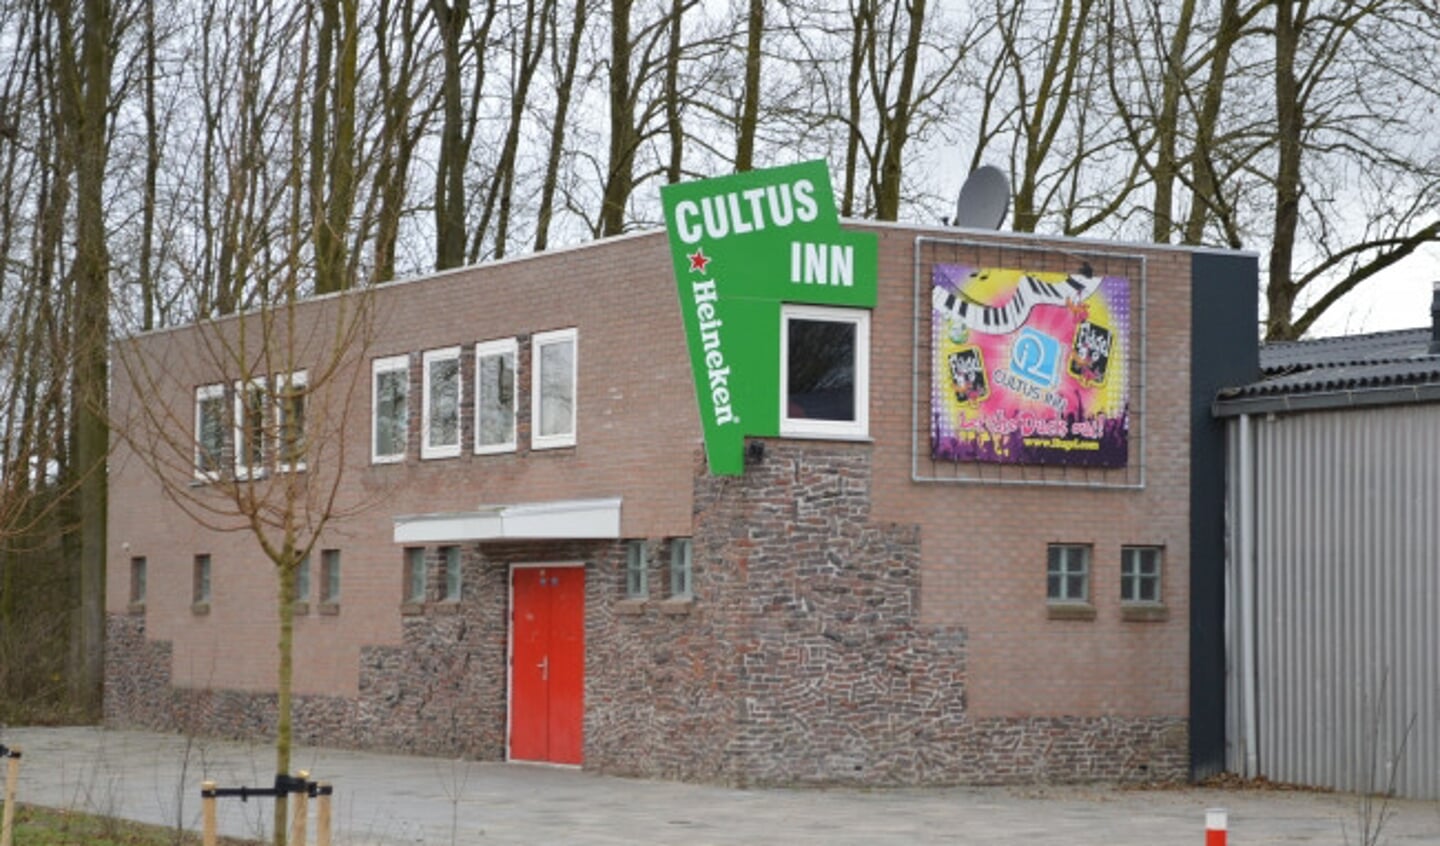 Cultus Inn